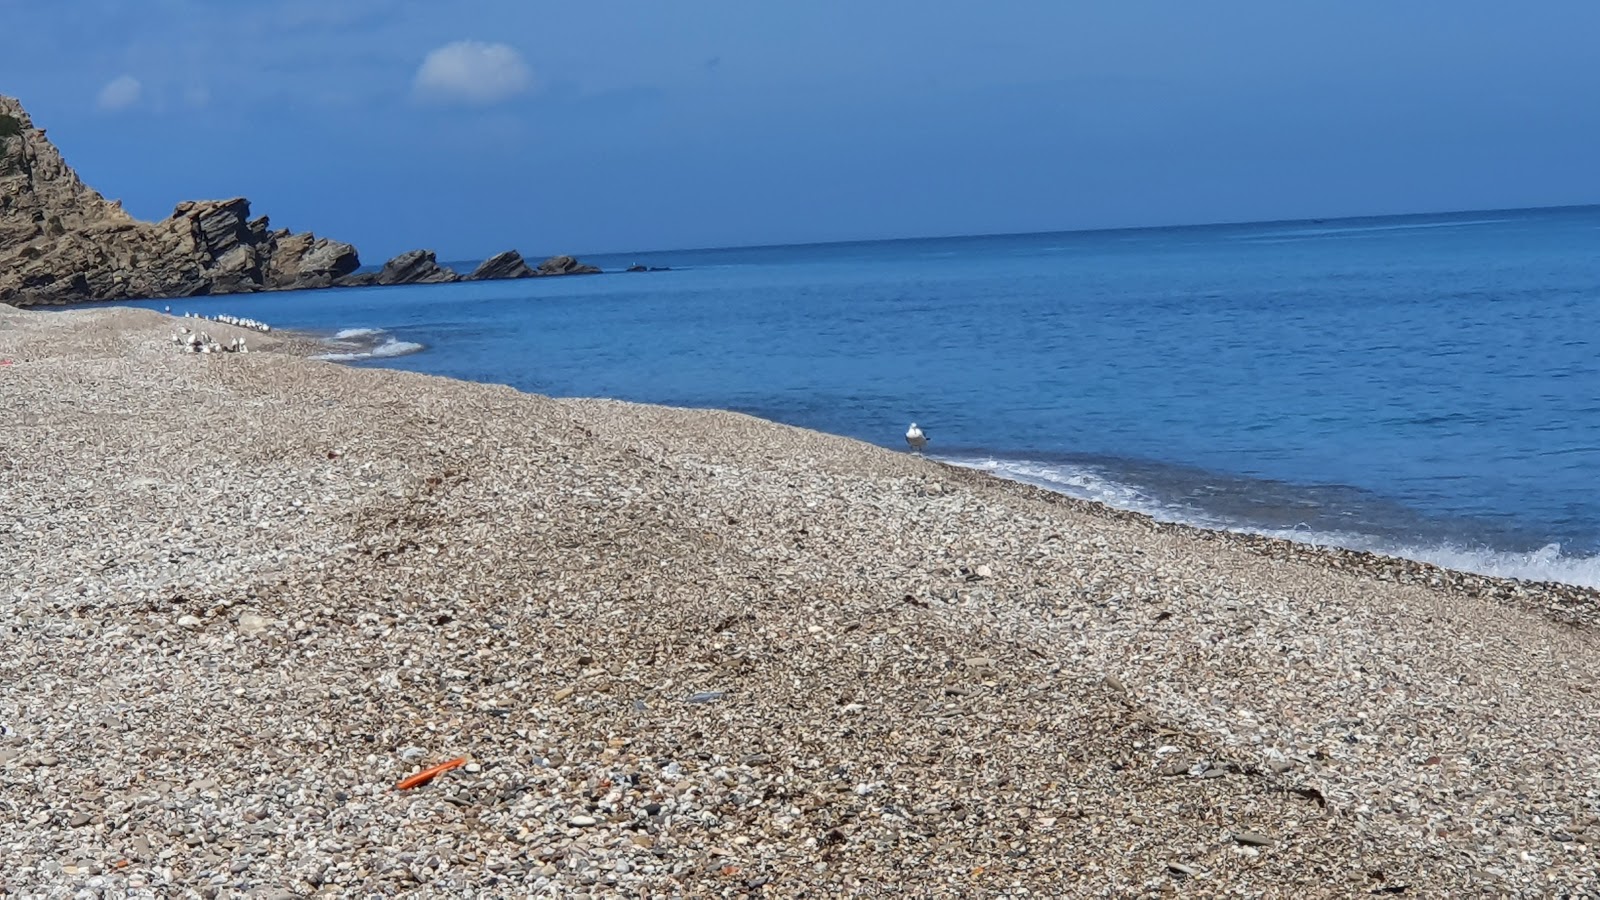 Fotografie cu Tamernout plage cu plajă spațioasă